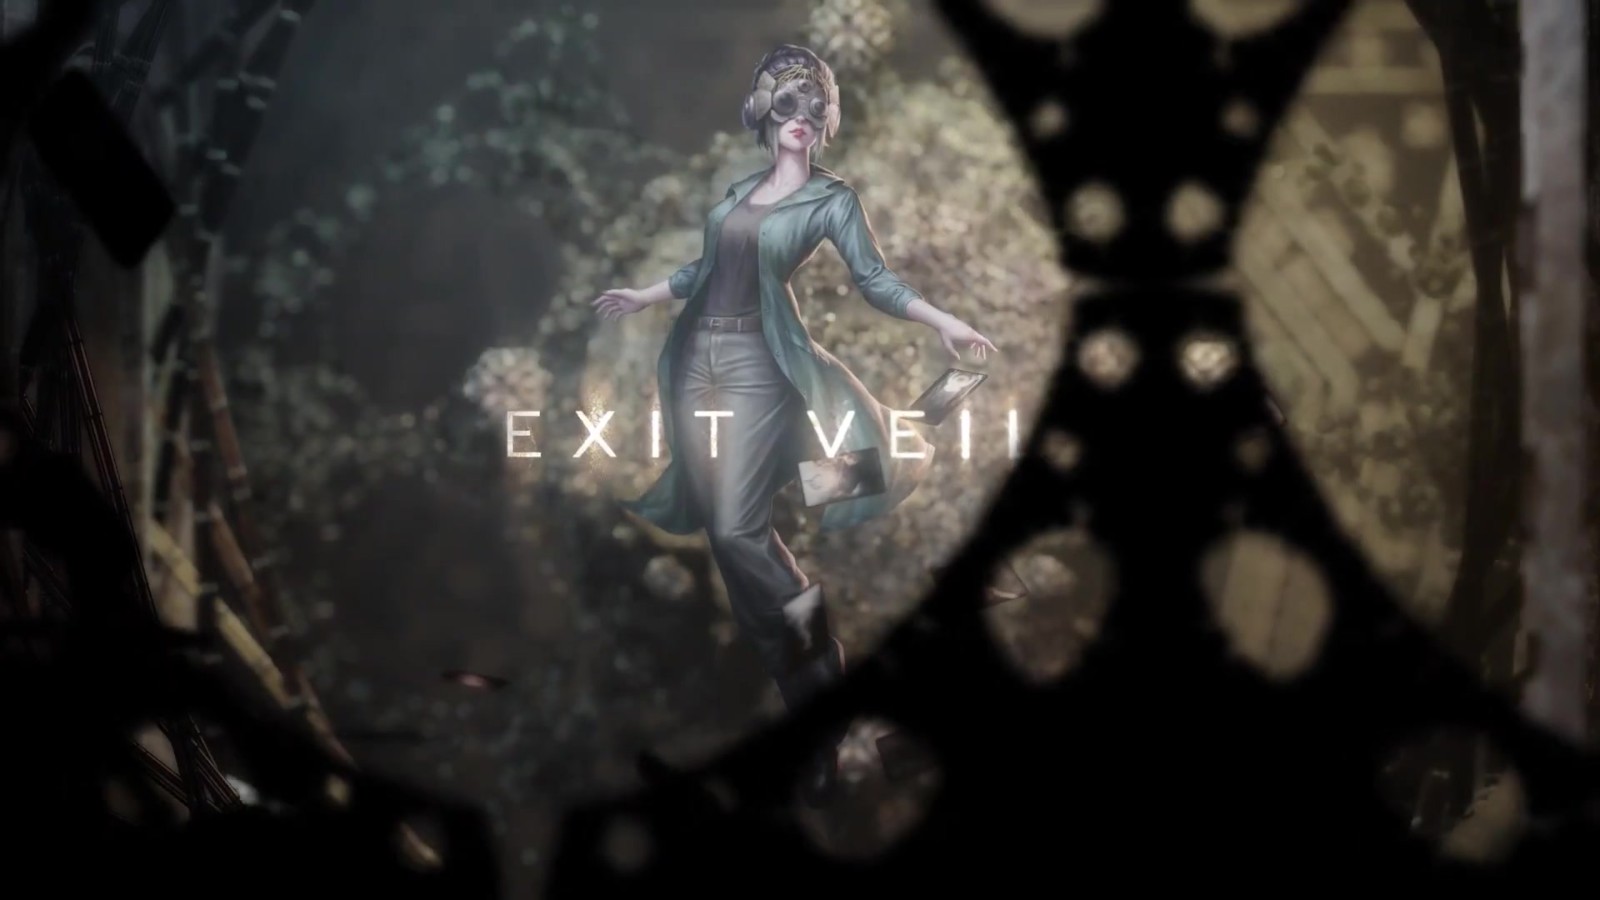 《EXIT VEIL》由DANGEN负责刊行 新预告片揭示